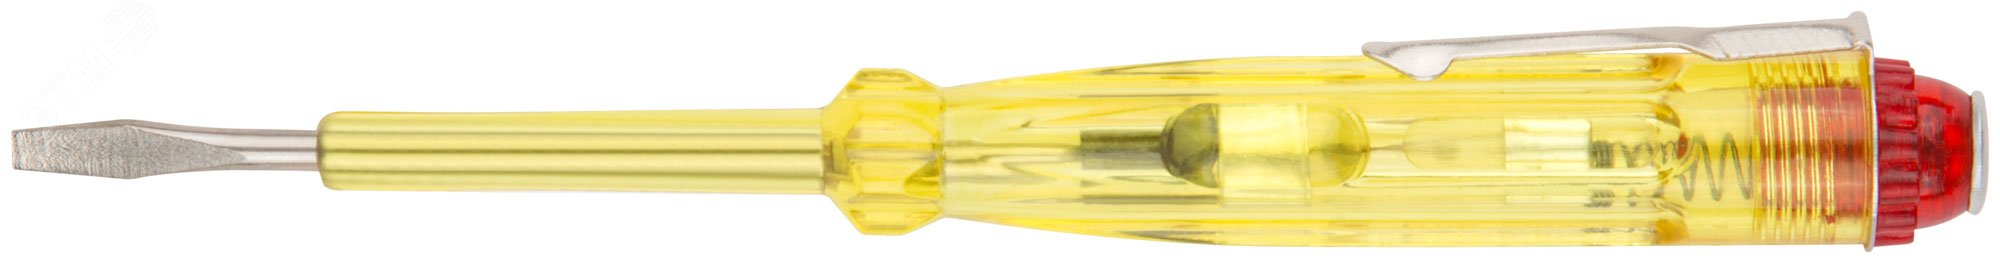 Отвертка индикаторная, желтая ручка 100 - 500 В, 140 мм 56501 КУРС - превью